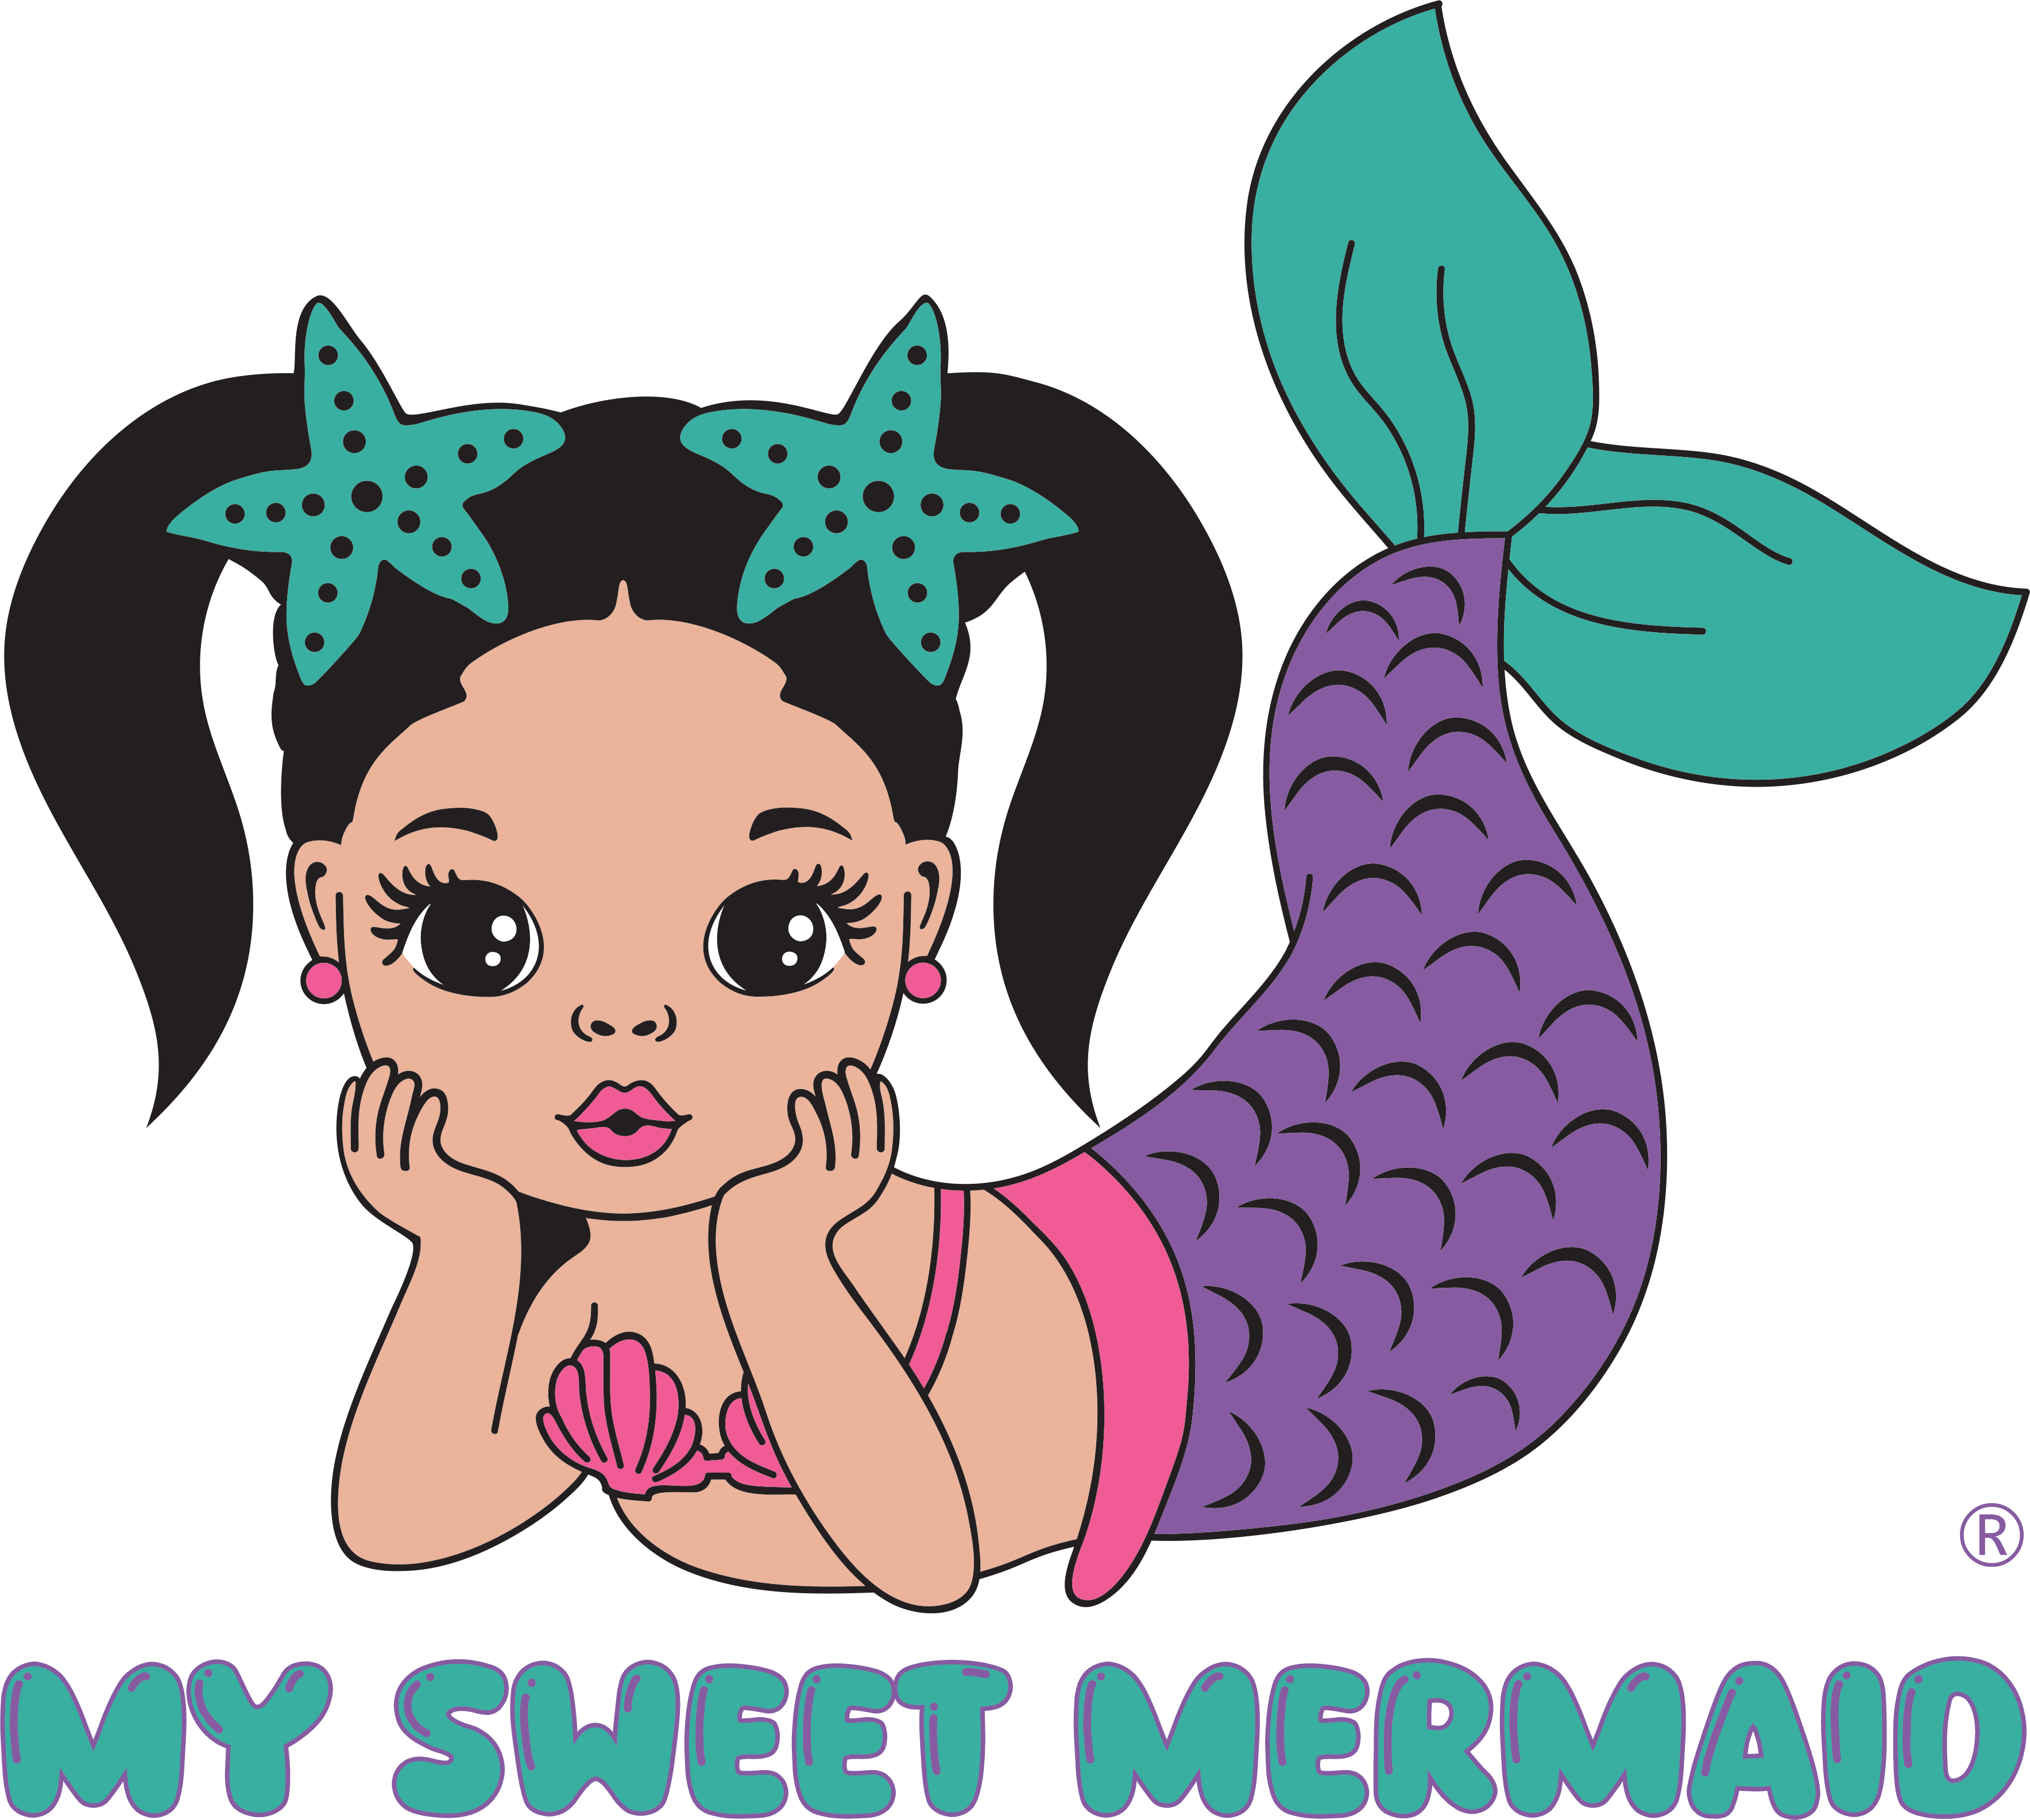 My Sweet Mermaid